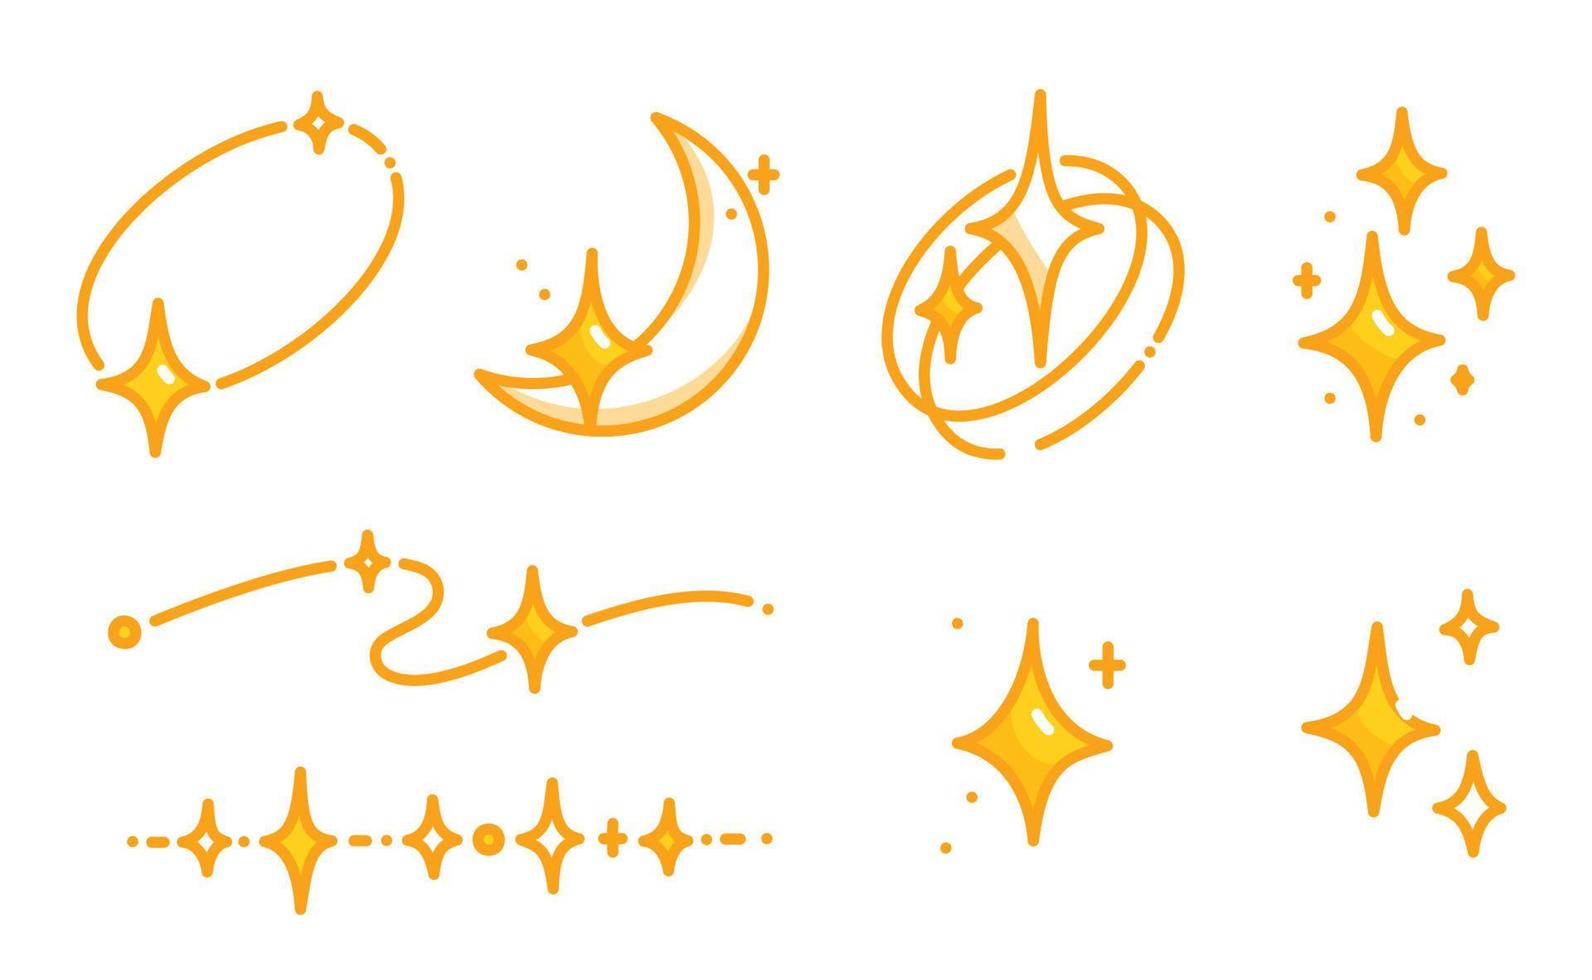 étoile dorée scintillante constellation kawaii doodle illustration vectorielle plane vecteur